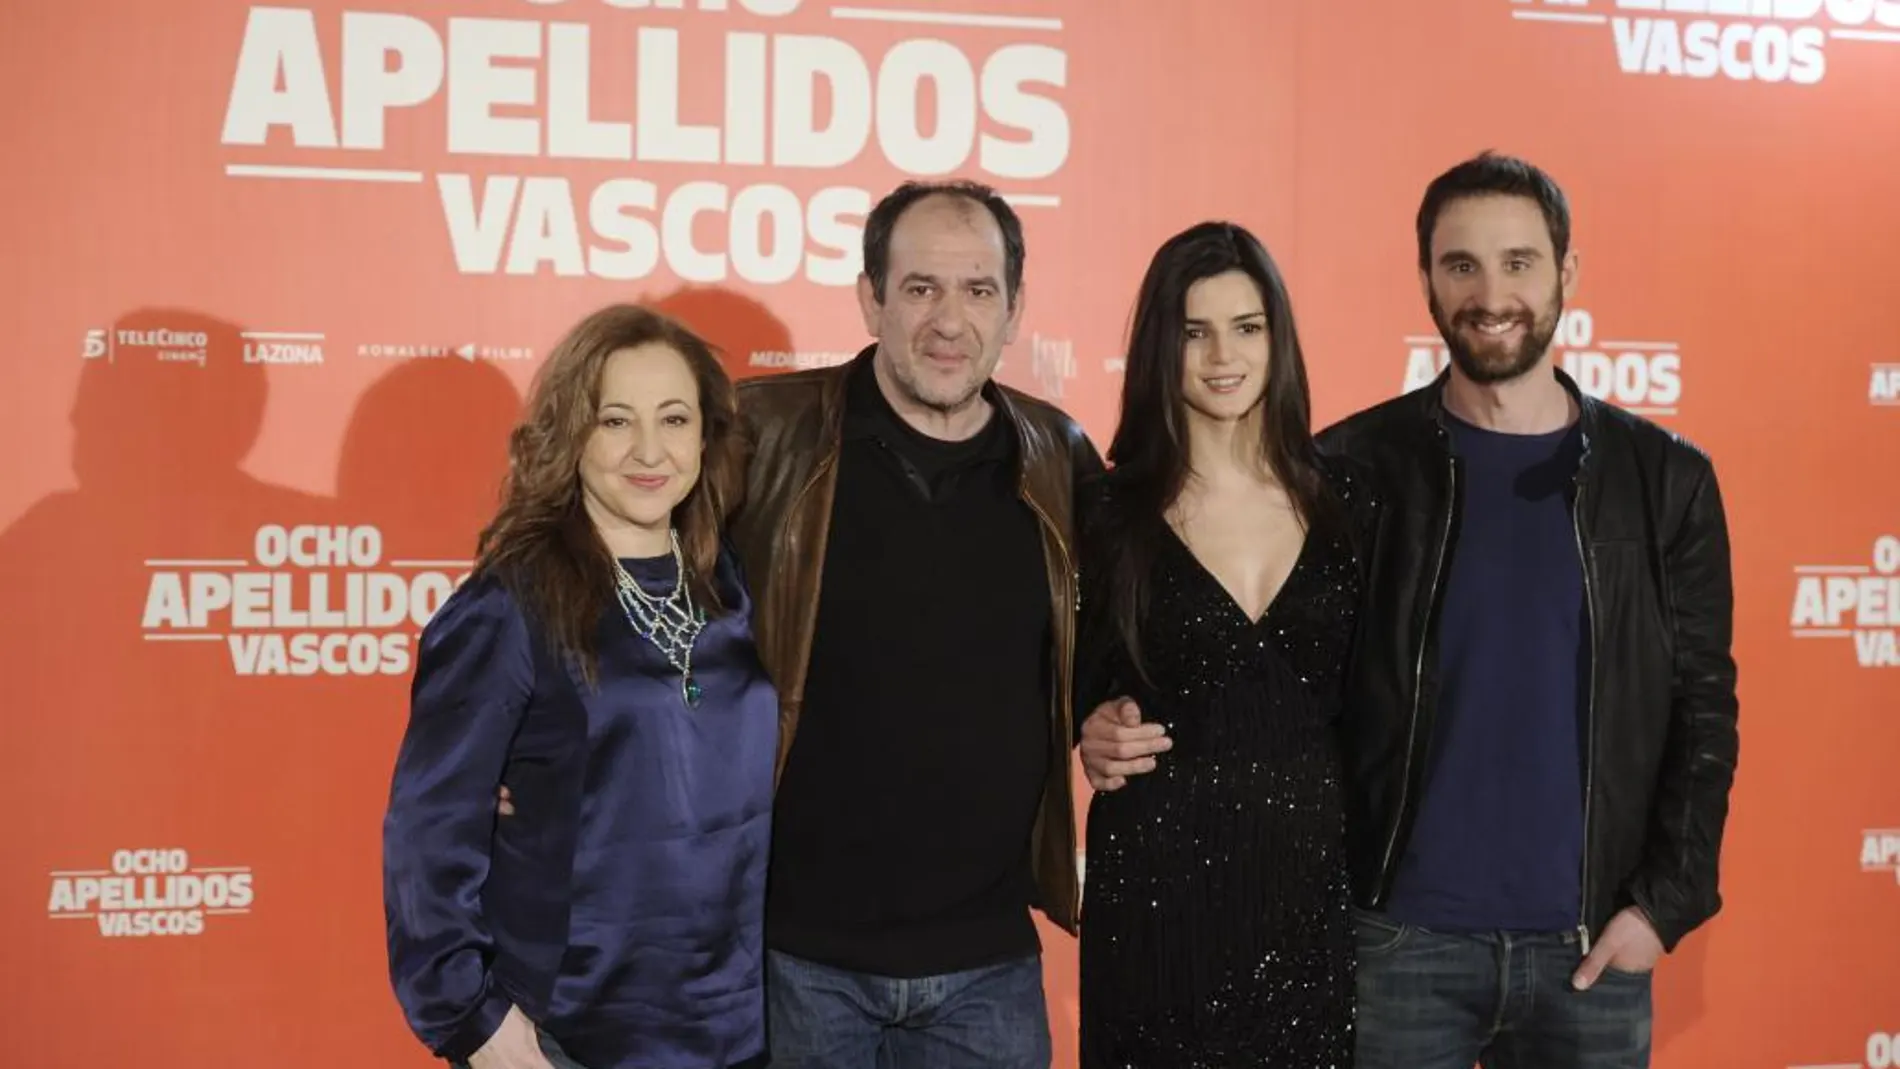 Los actores Carmen Machi, Karra Elejandlde, Clara Lago y Dani Rovira